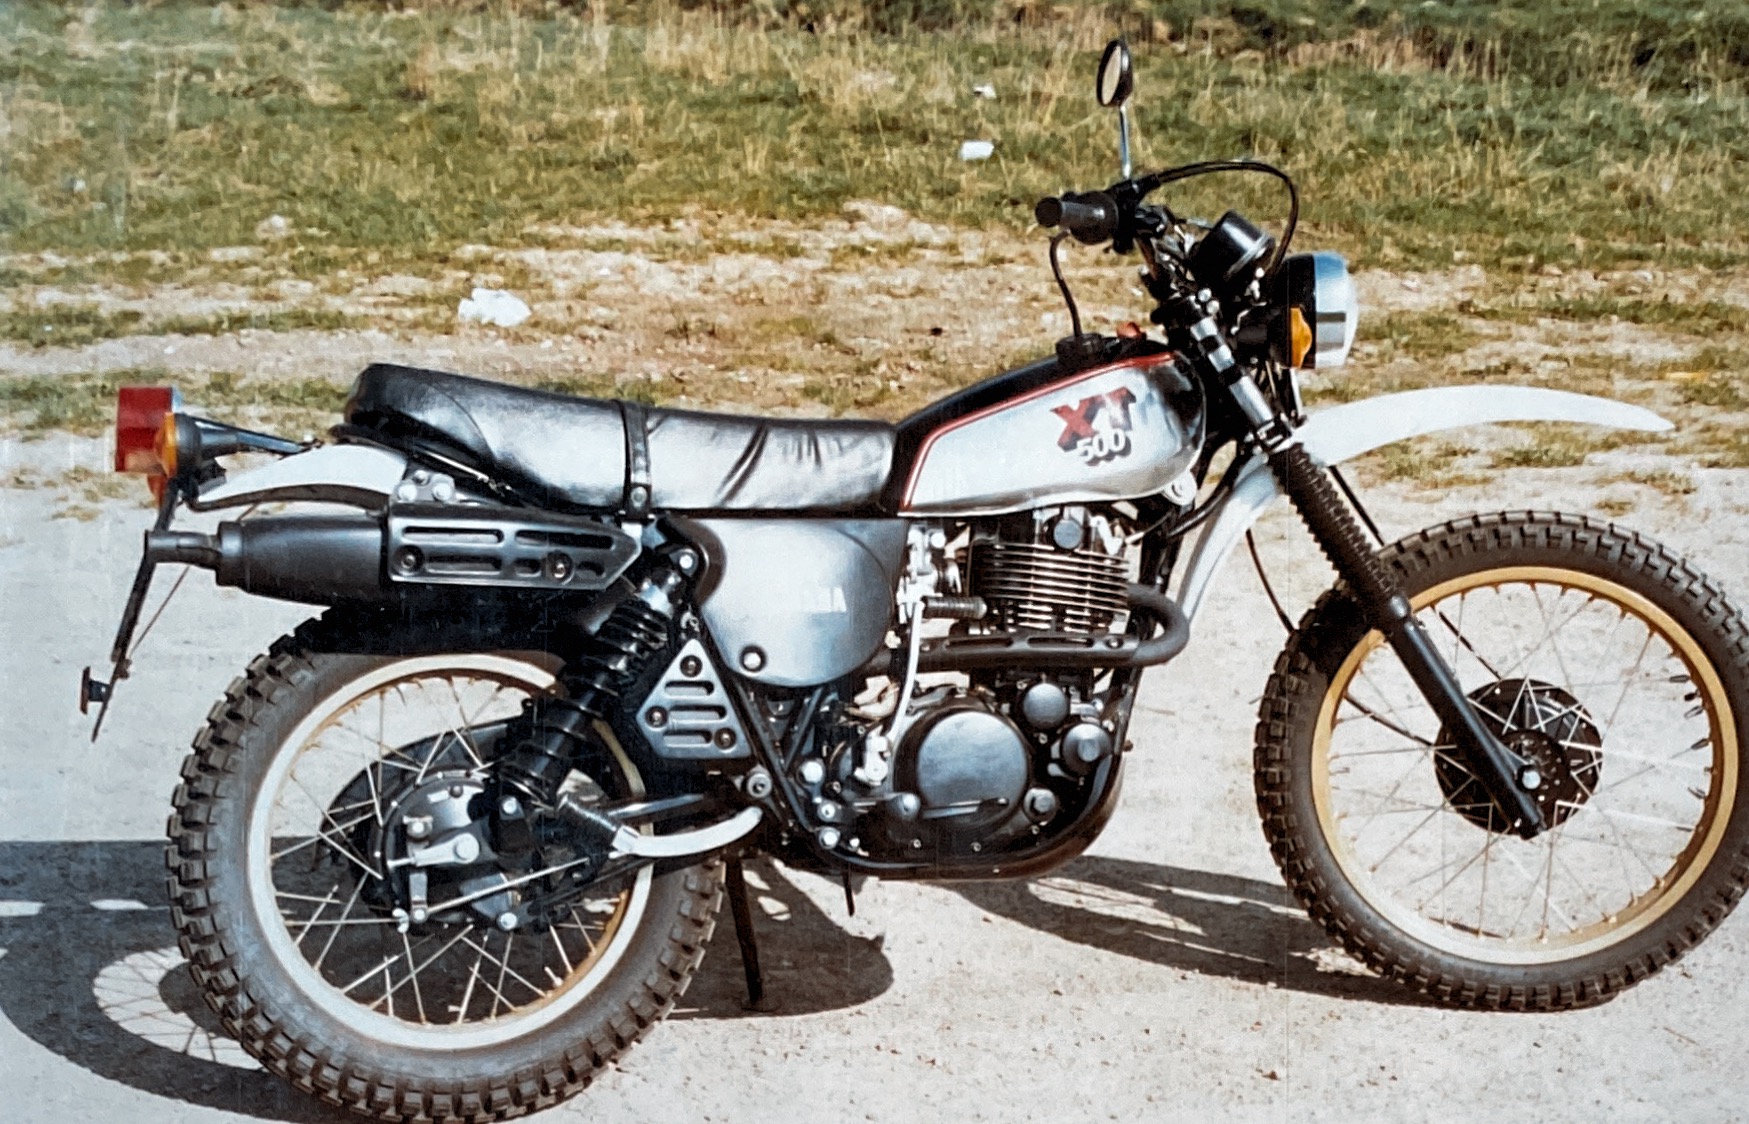 Meine erste Yamaha XT 500, 1981 für 5088DM neu gekauft. Dafür bekommt man heute (2021) kaum ein Fahrrad